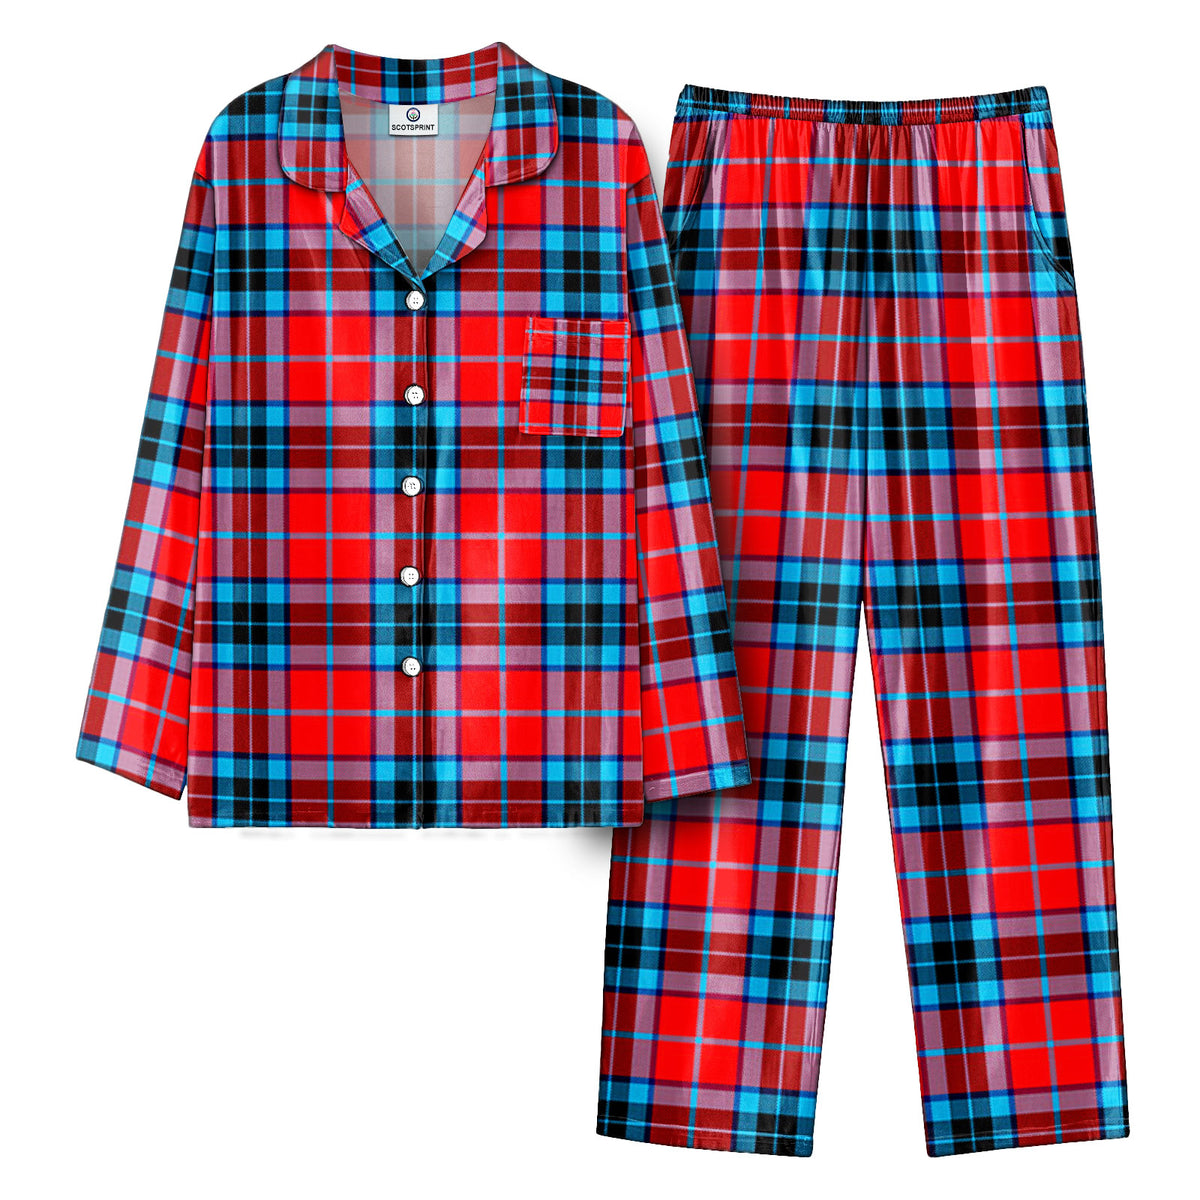 MacTavish Modern Tartan Pajama Set